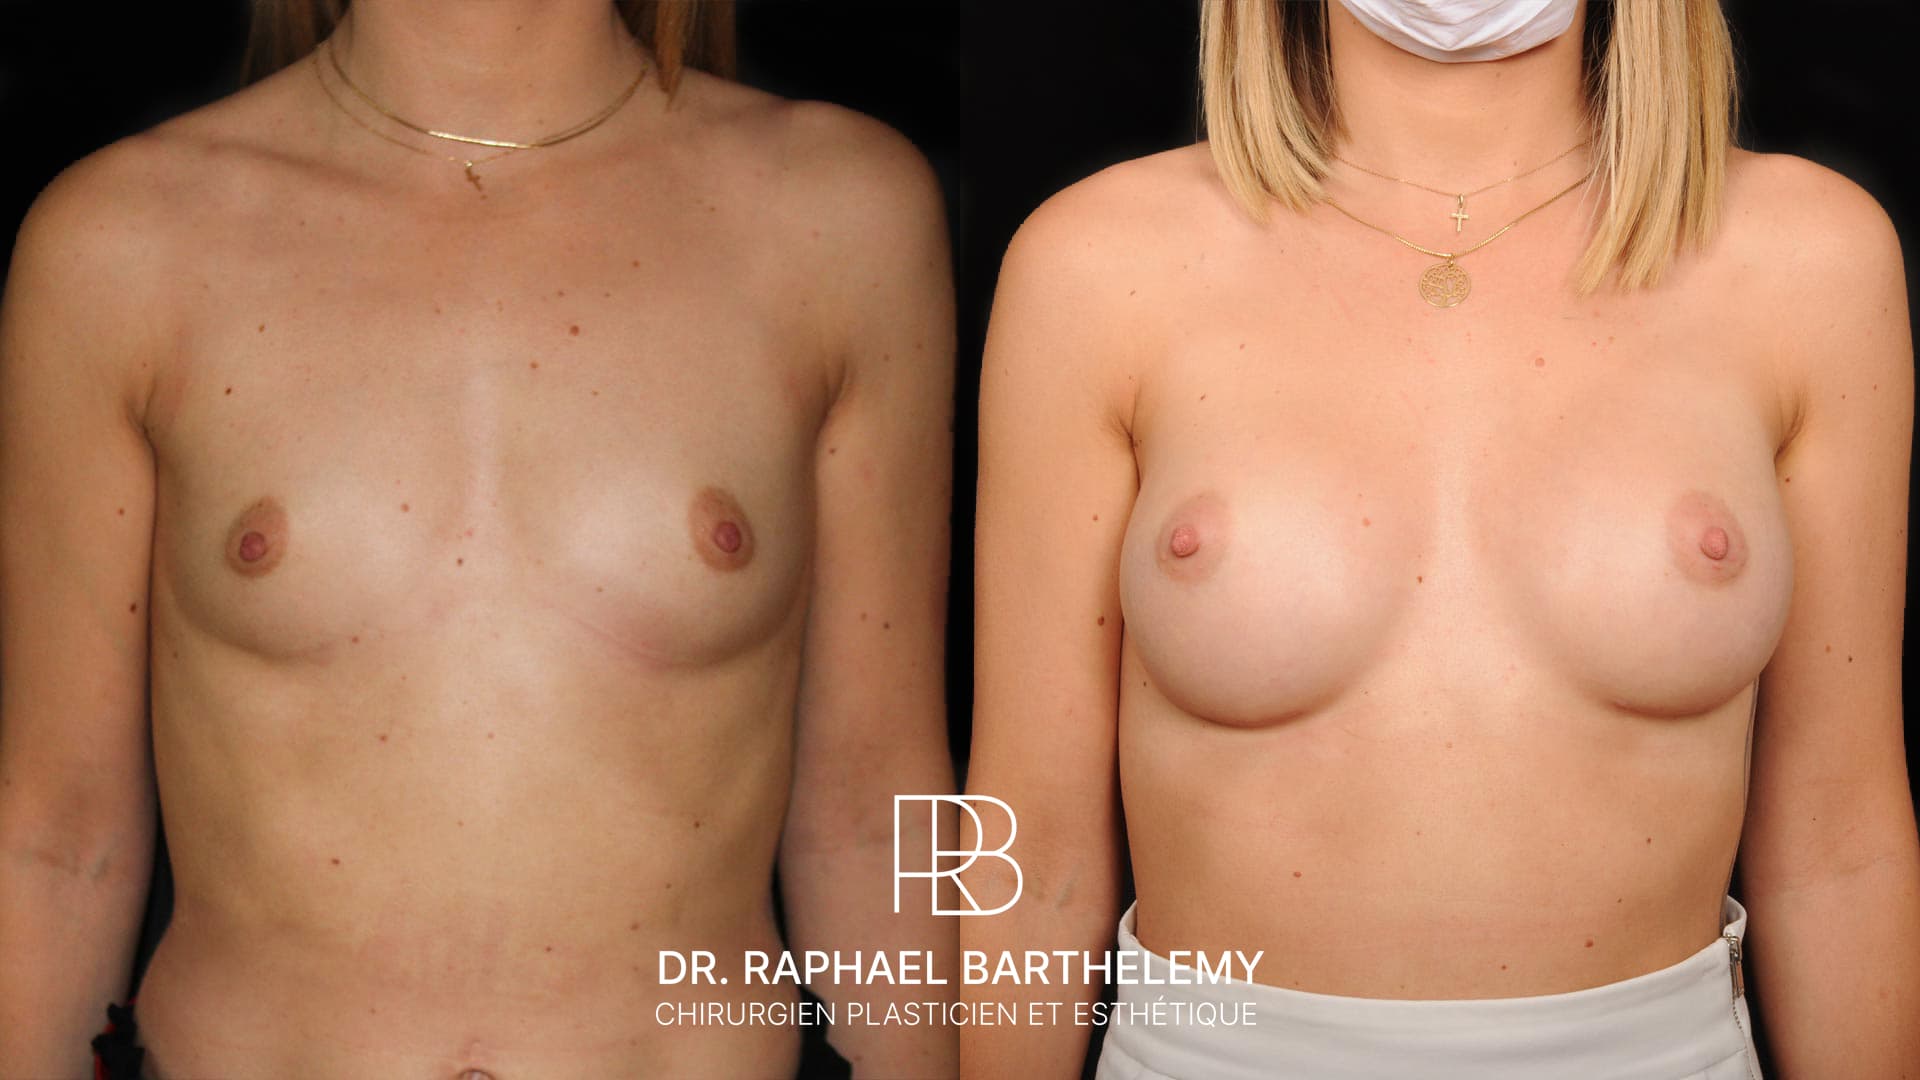 Résultat avant après d'une augmentation mammaire par prothèses en dual plan 290 cc réalisée par le Dr.Barthelemy à Marseille, vue de face